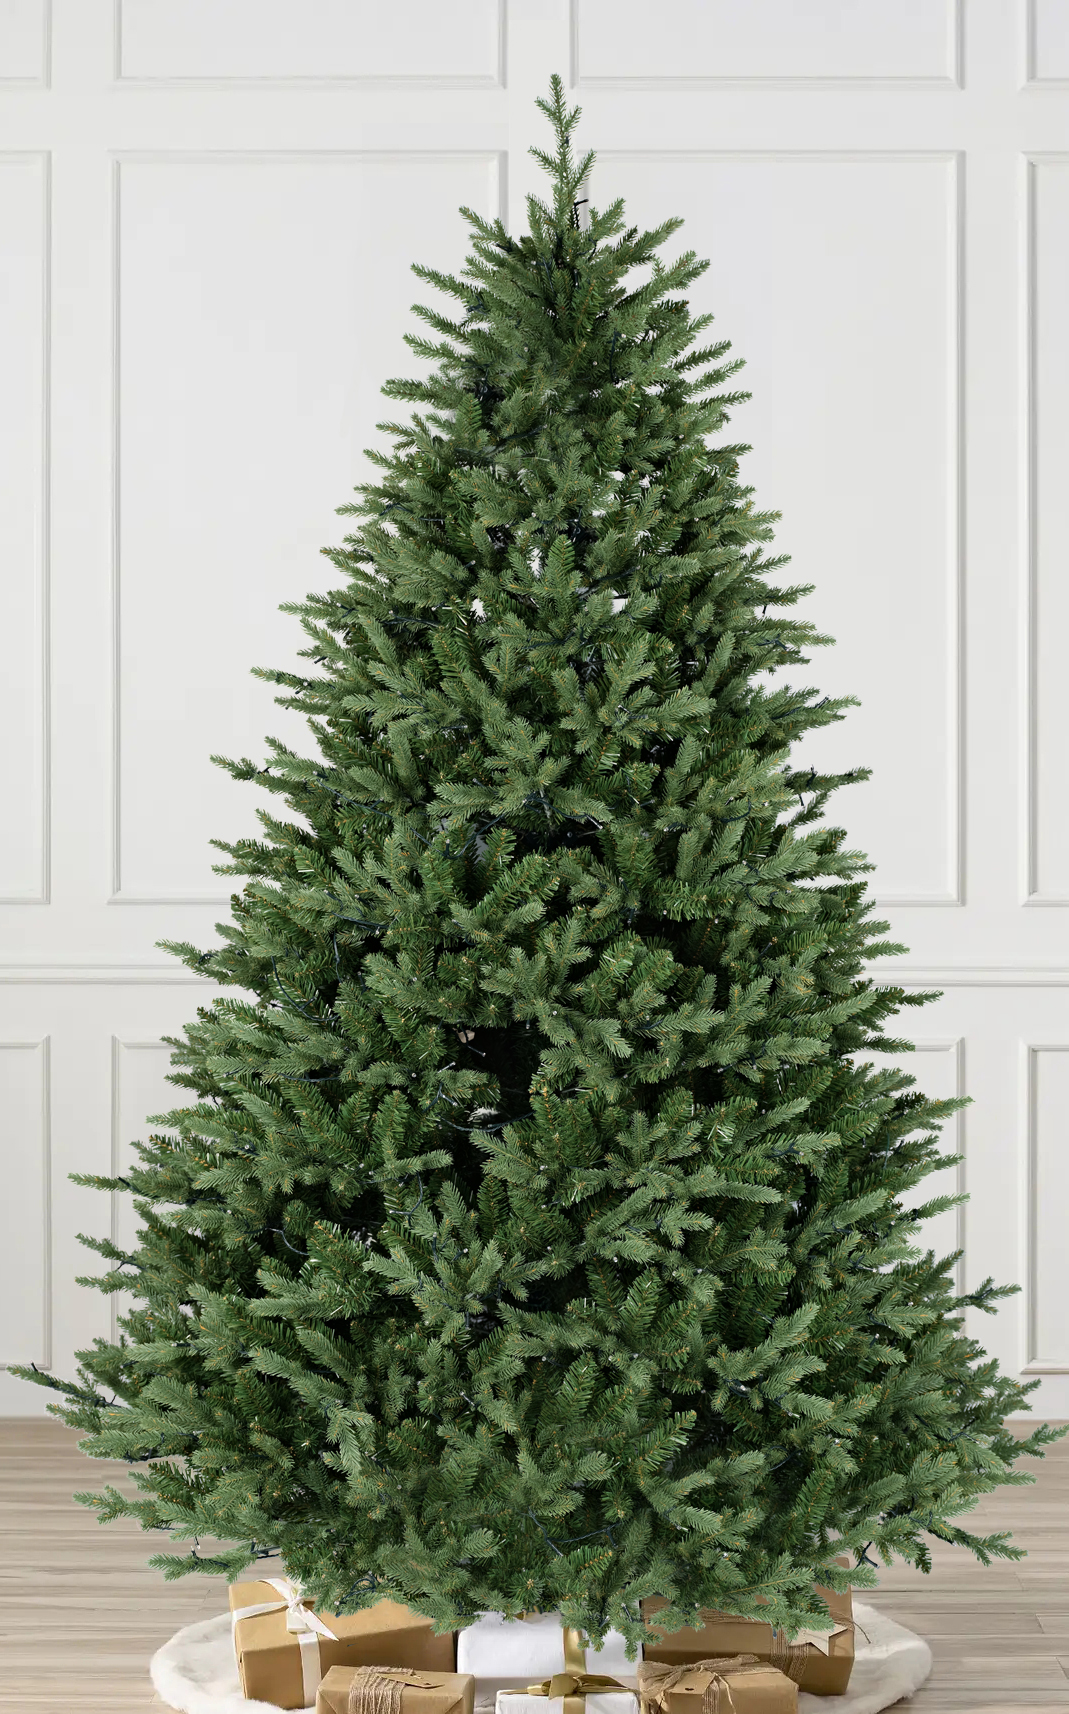 BU Christmas tree